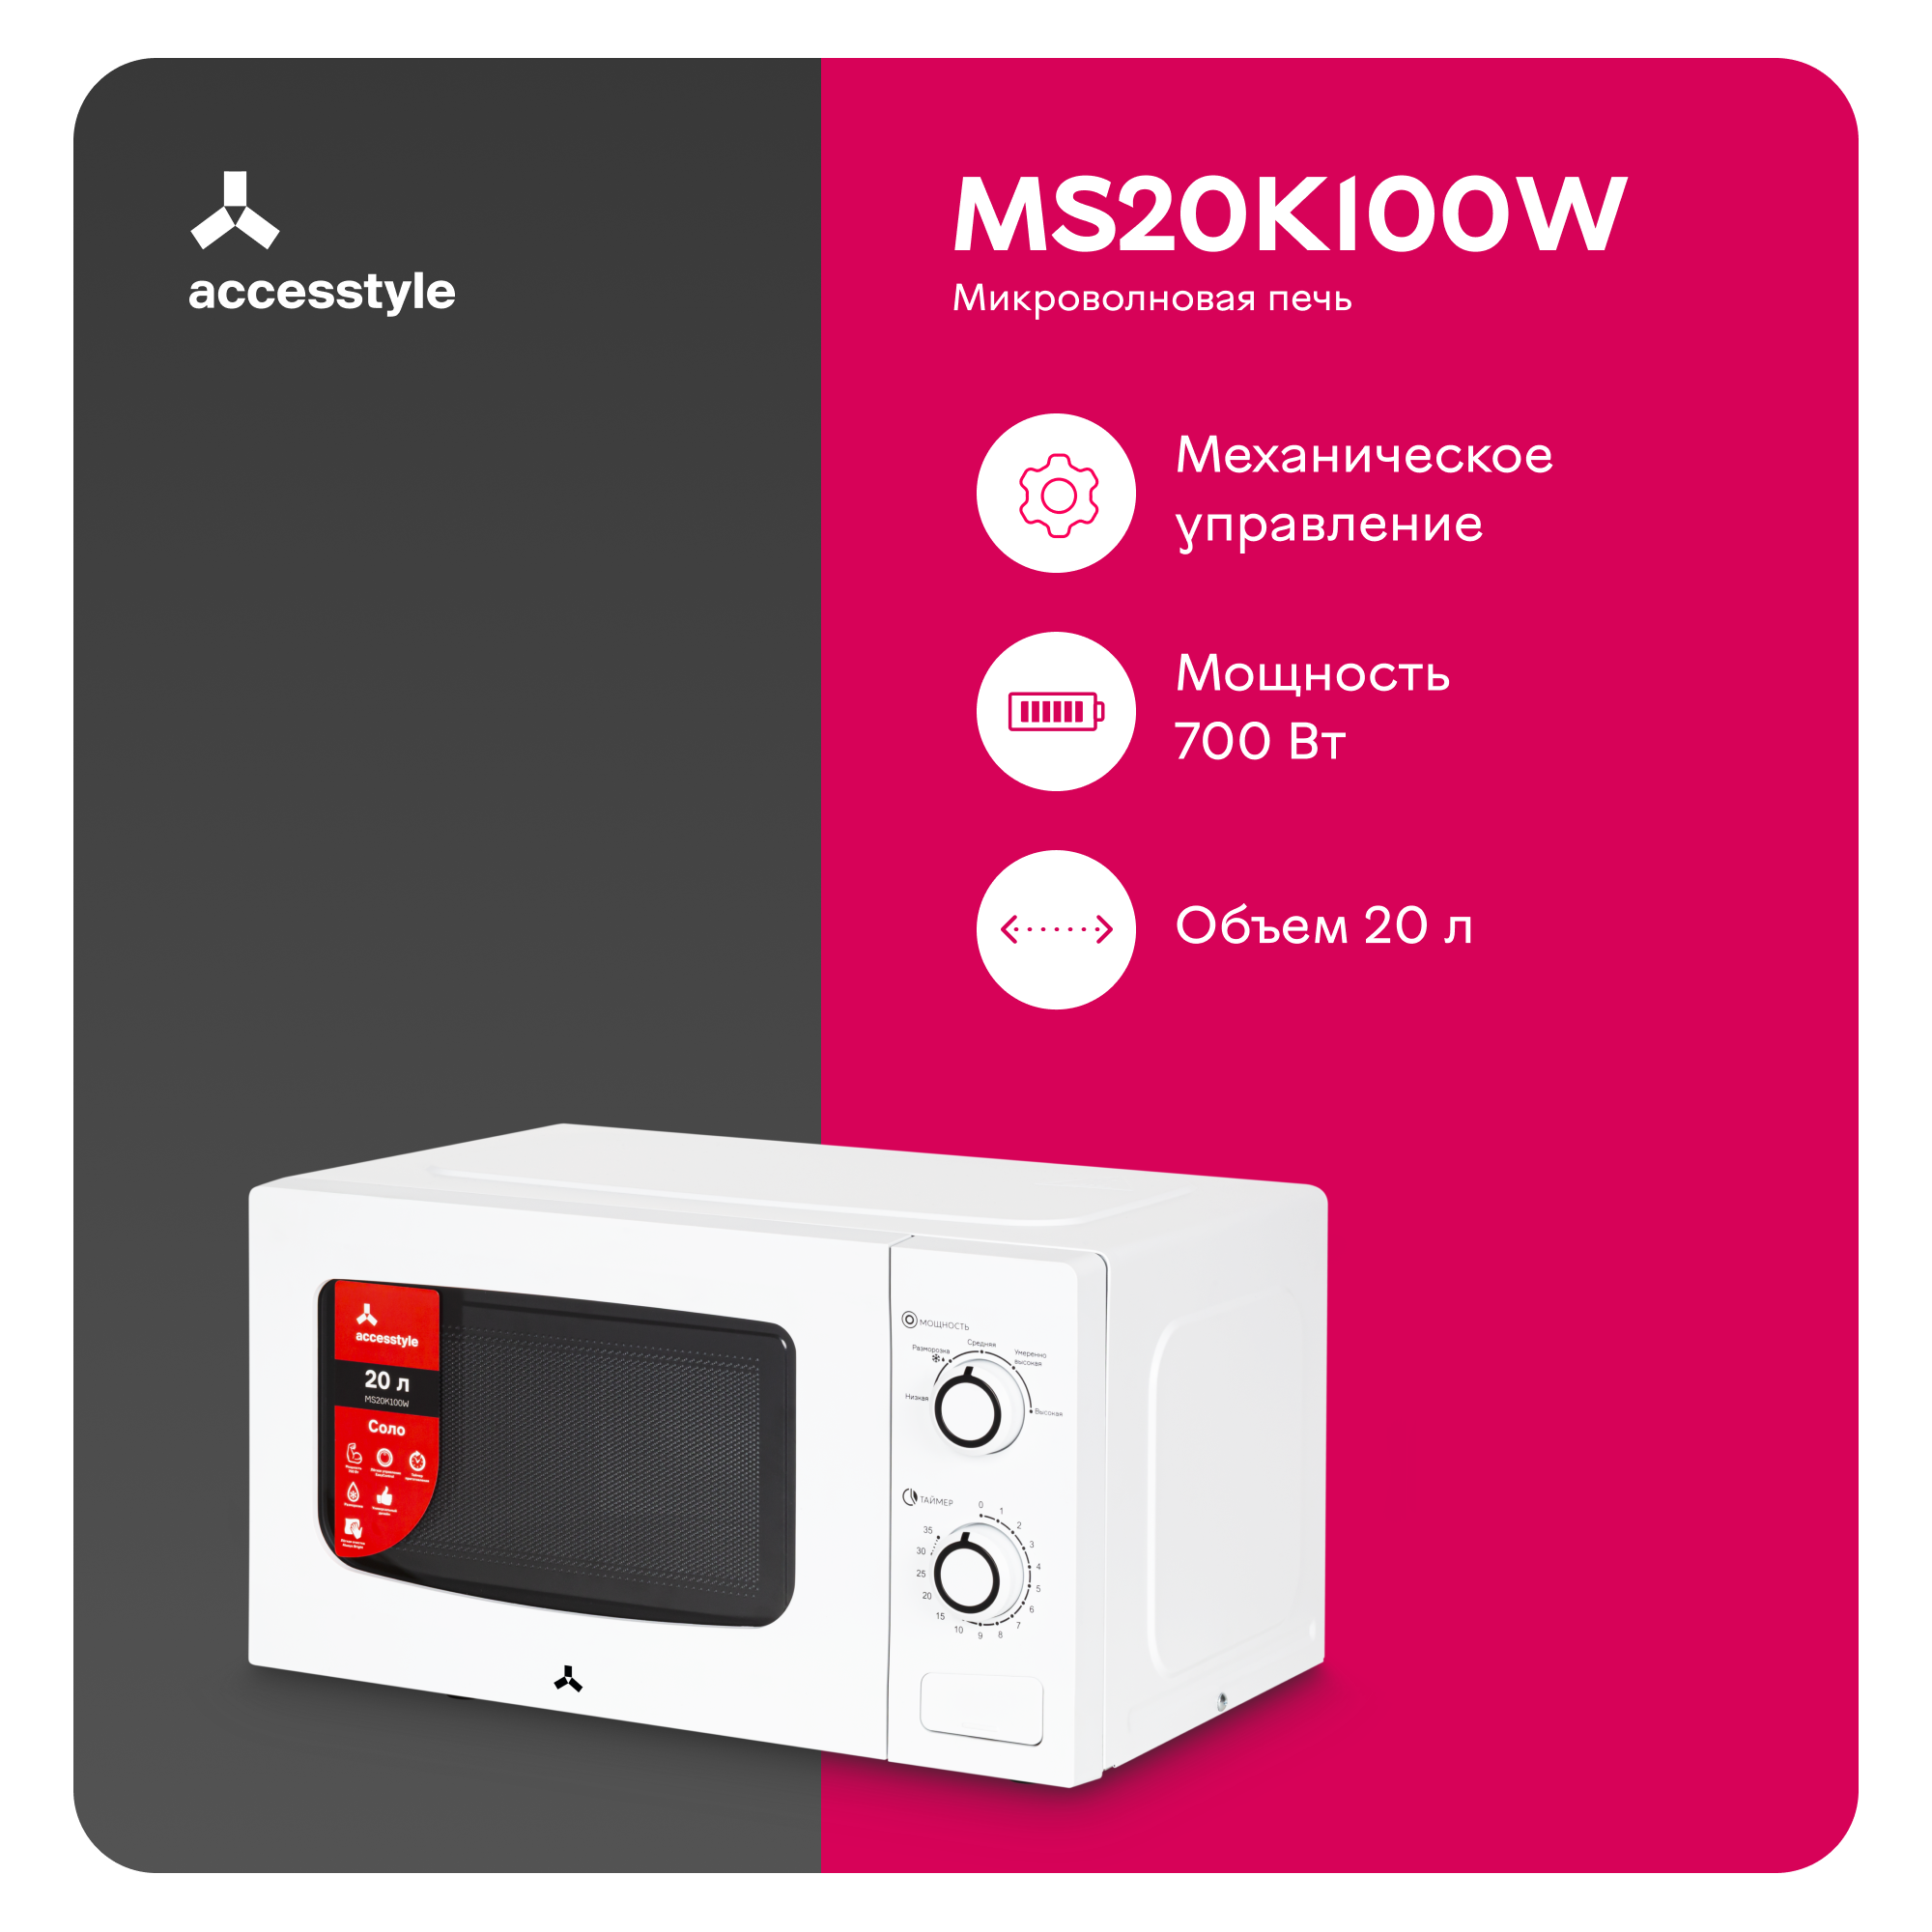 Микроволновая печь соло Accesstyle MS20K100W белый, купить в Москве, цены в интернет-магазинах на Мегамаркет